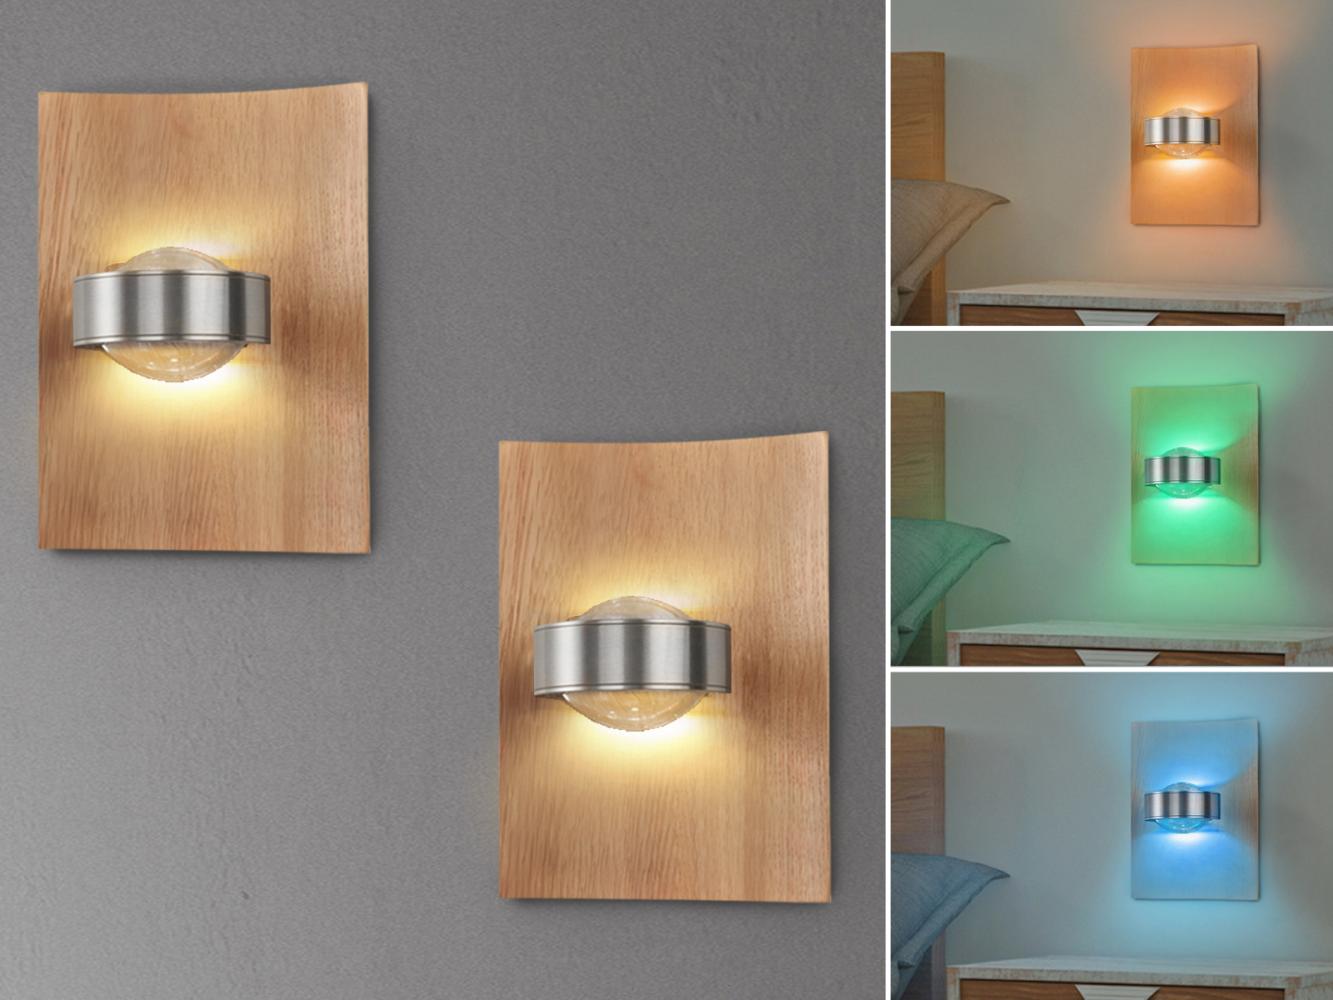 2er SET LED Wandlampen Holz mit Schalter, dimmbar & RGB Farbwechsel, 21cm hoch Bild 1